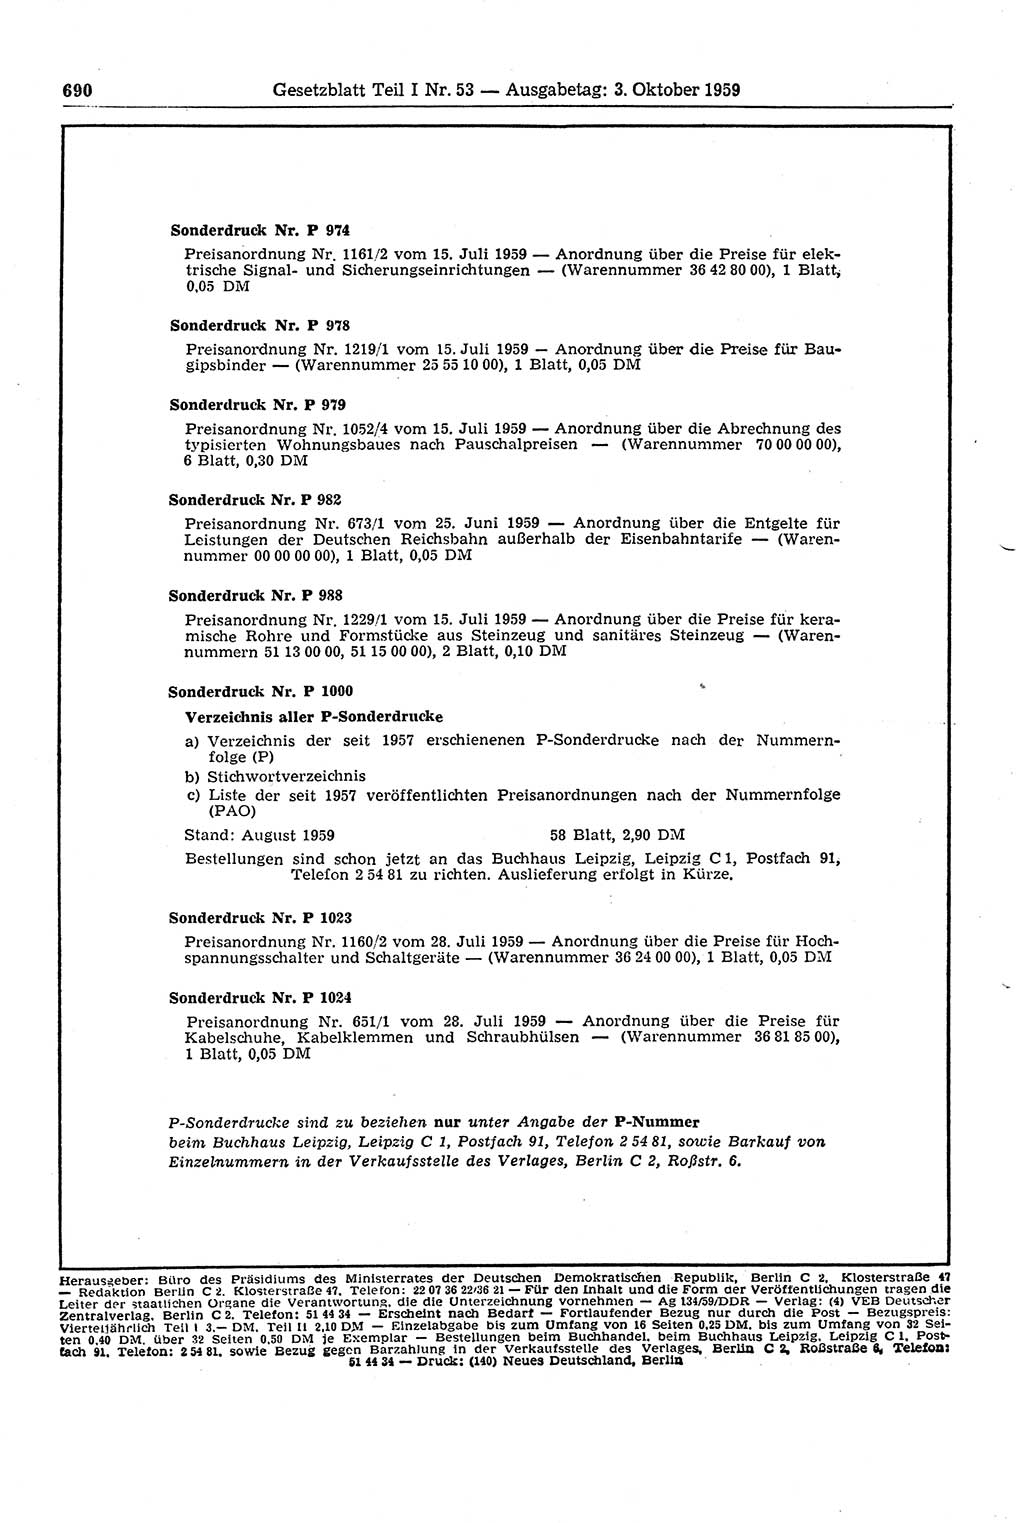 Gesetzblatt (GBl.) der Deutschen Demokratischen Republik (DDR) Teil Ⅰ 1959, Seite 690 (GBl. DDR Ⅰ 1959, S. 690)